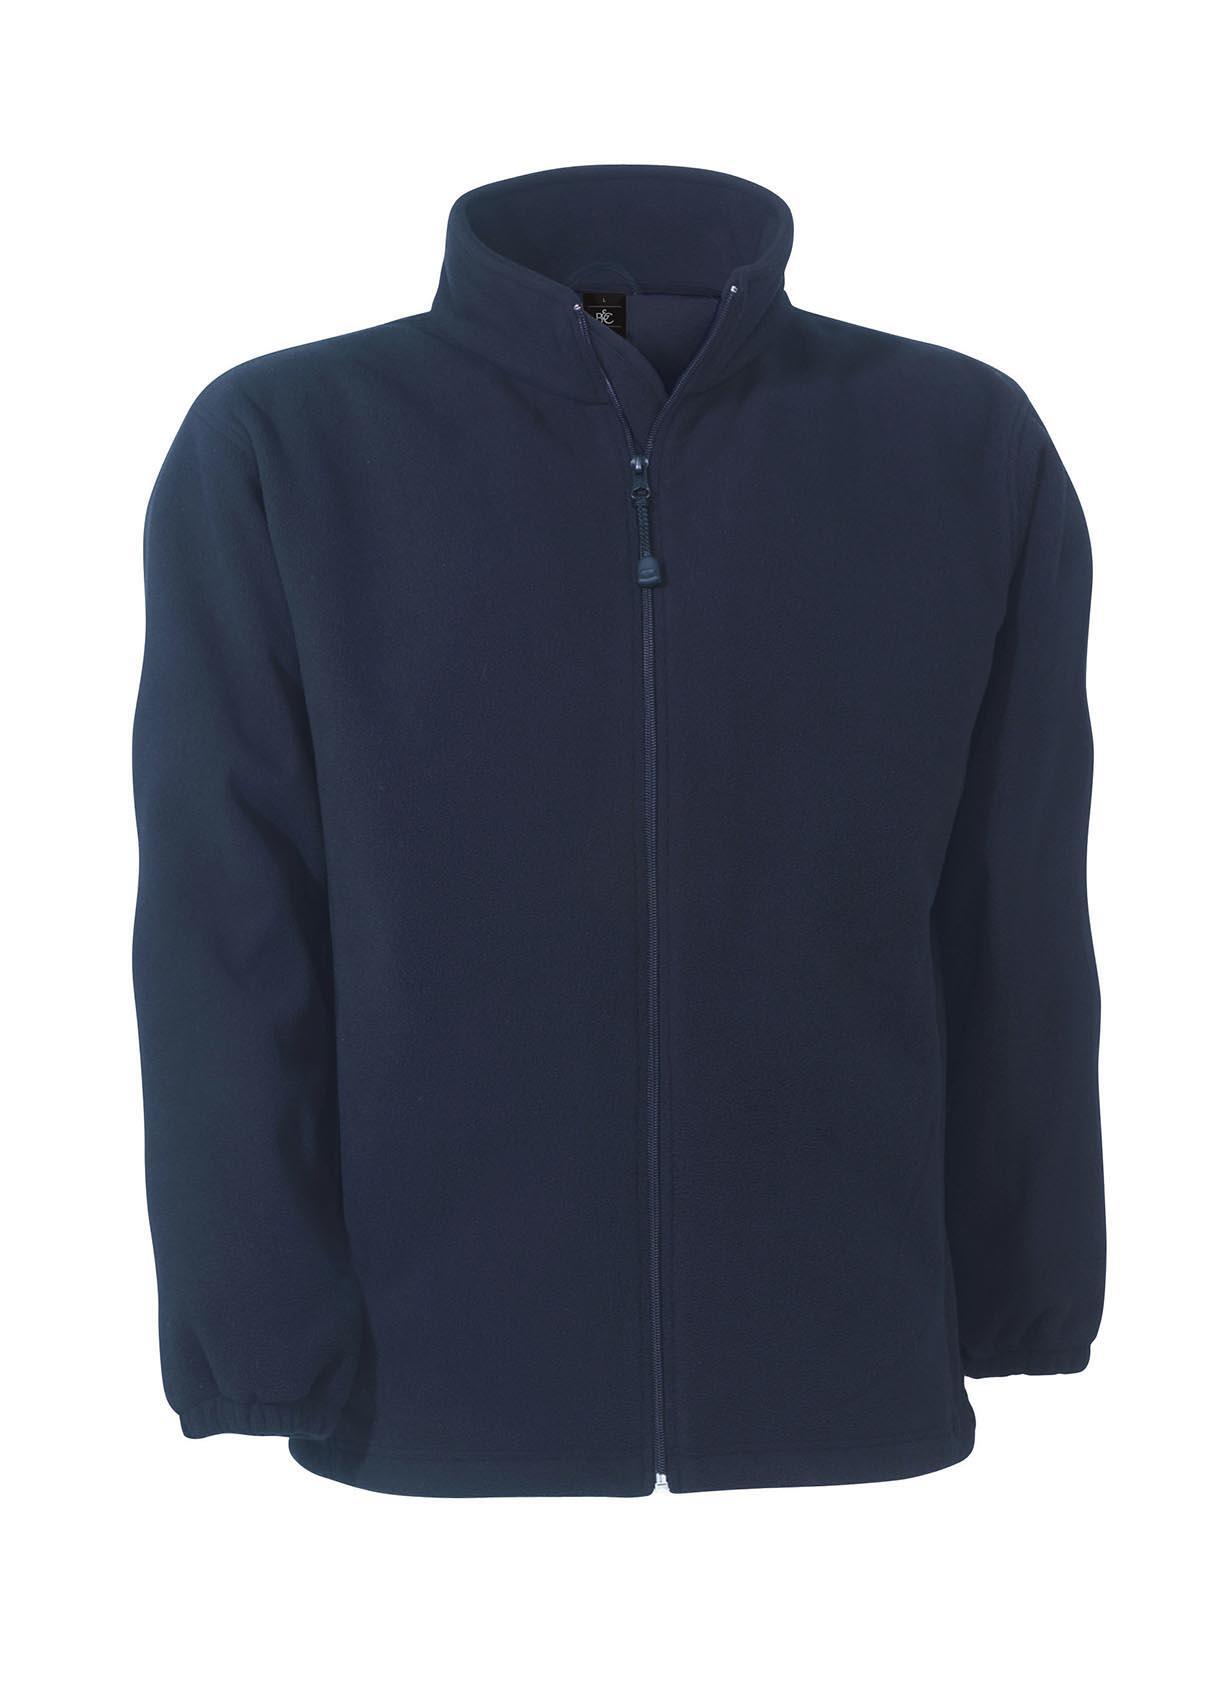 Fleece jas voor mannen donkerblauw windproof en waterbestendig